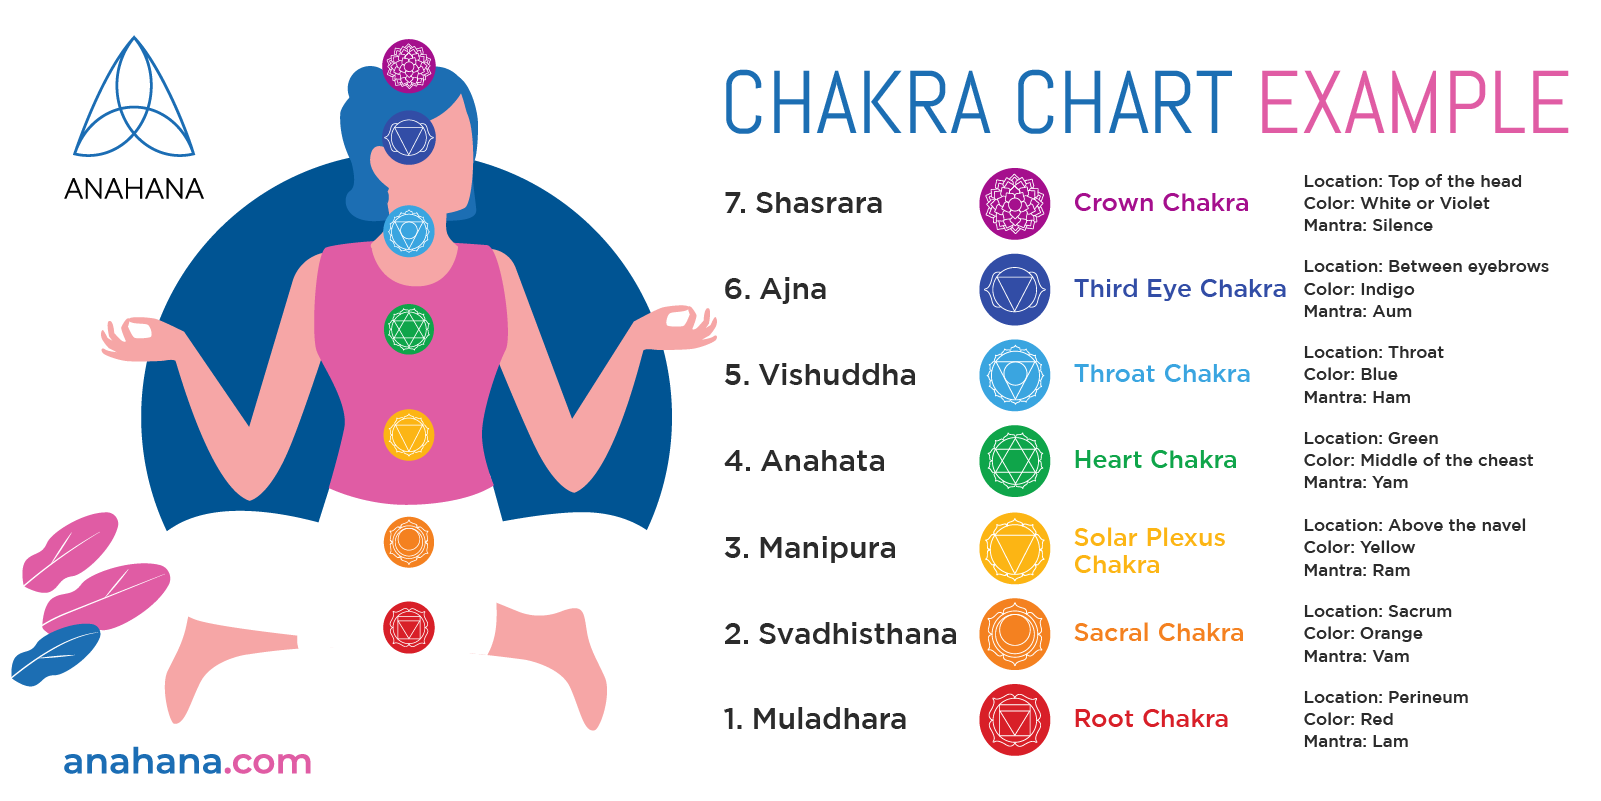 exemple de diagramme des chakras